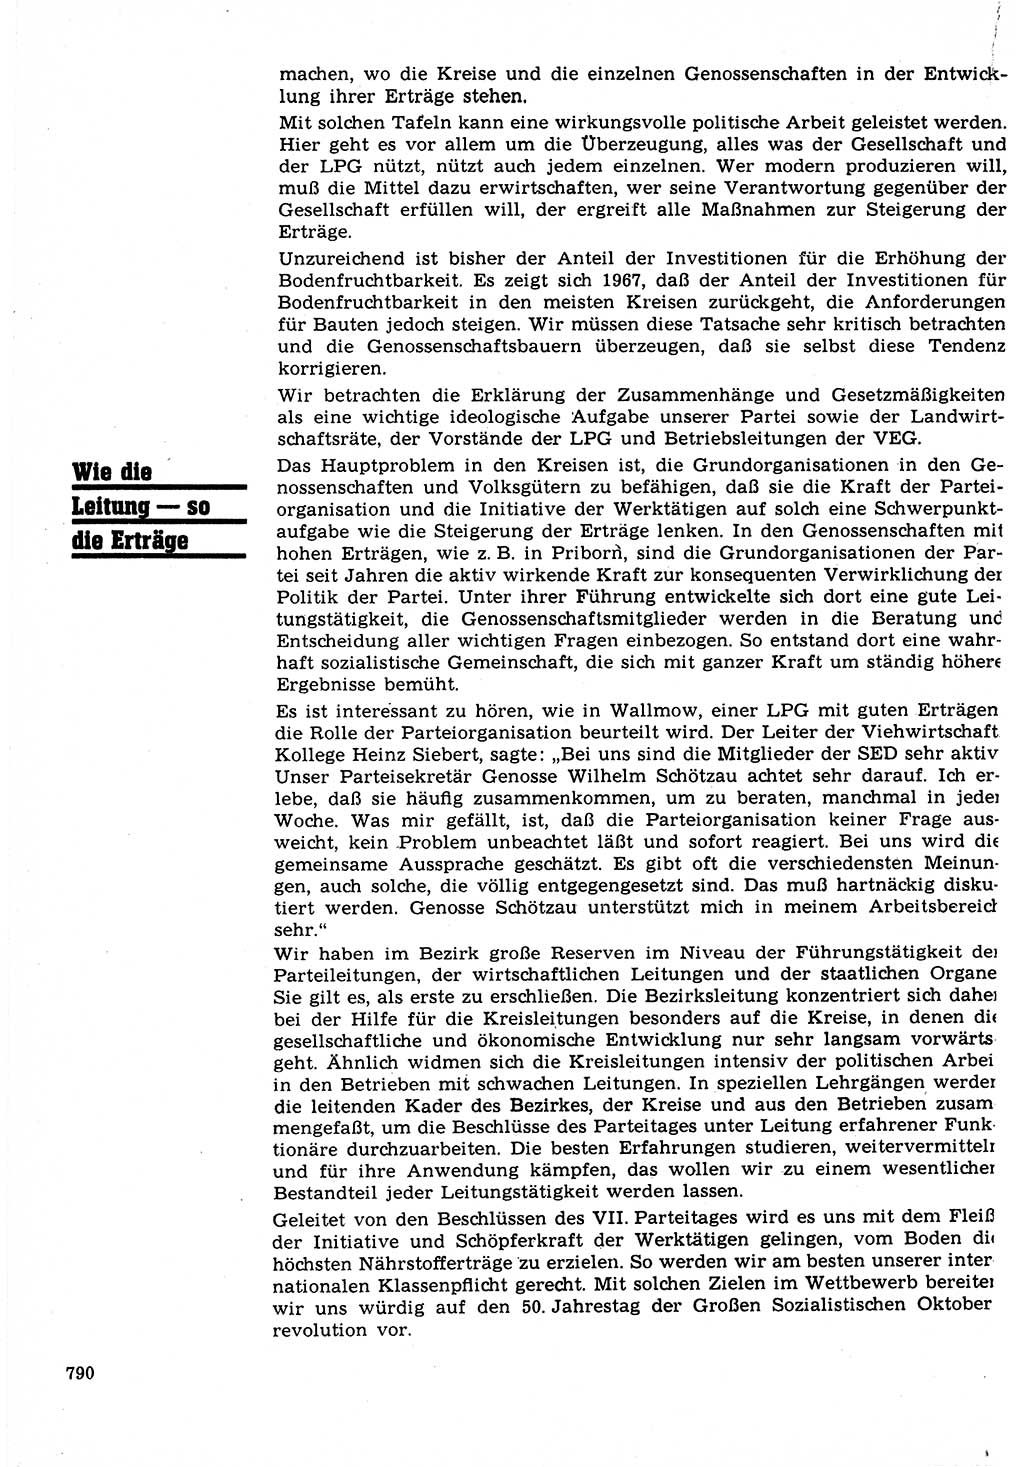 Neuer Weg (NW), Organ des Zentralkomitees (ZK) der SED (Sozialistische Einheitspartei Deutschlands) für Fragen des Parteilebens, 22. Jahrgang [Deutsche Demokratische Republik (DDR)] 1967, Seite 790 (NW ZK SED DDR 1967, S. 790)